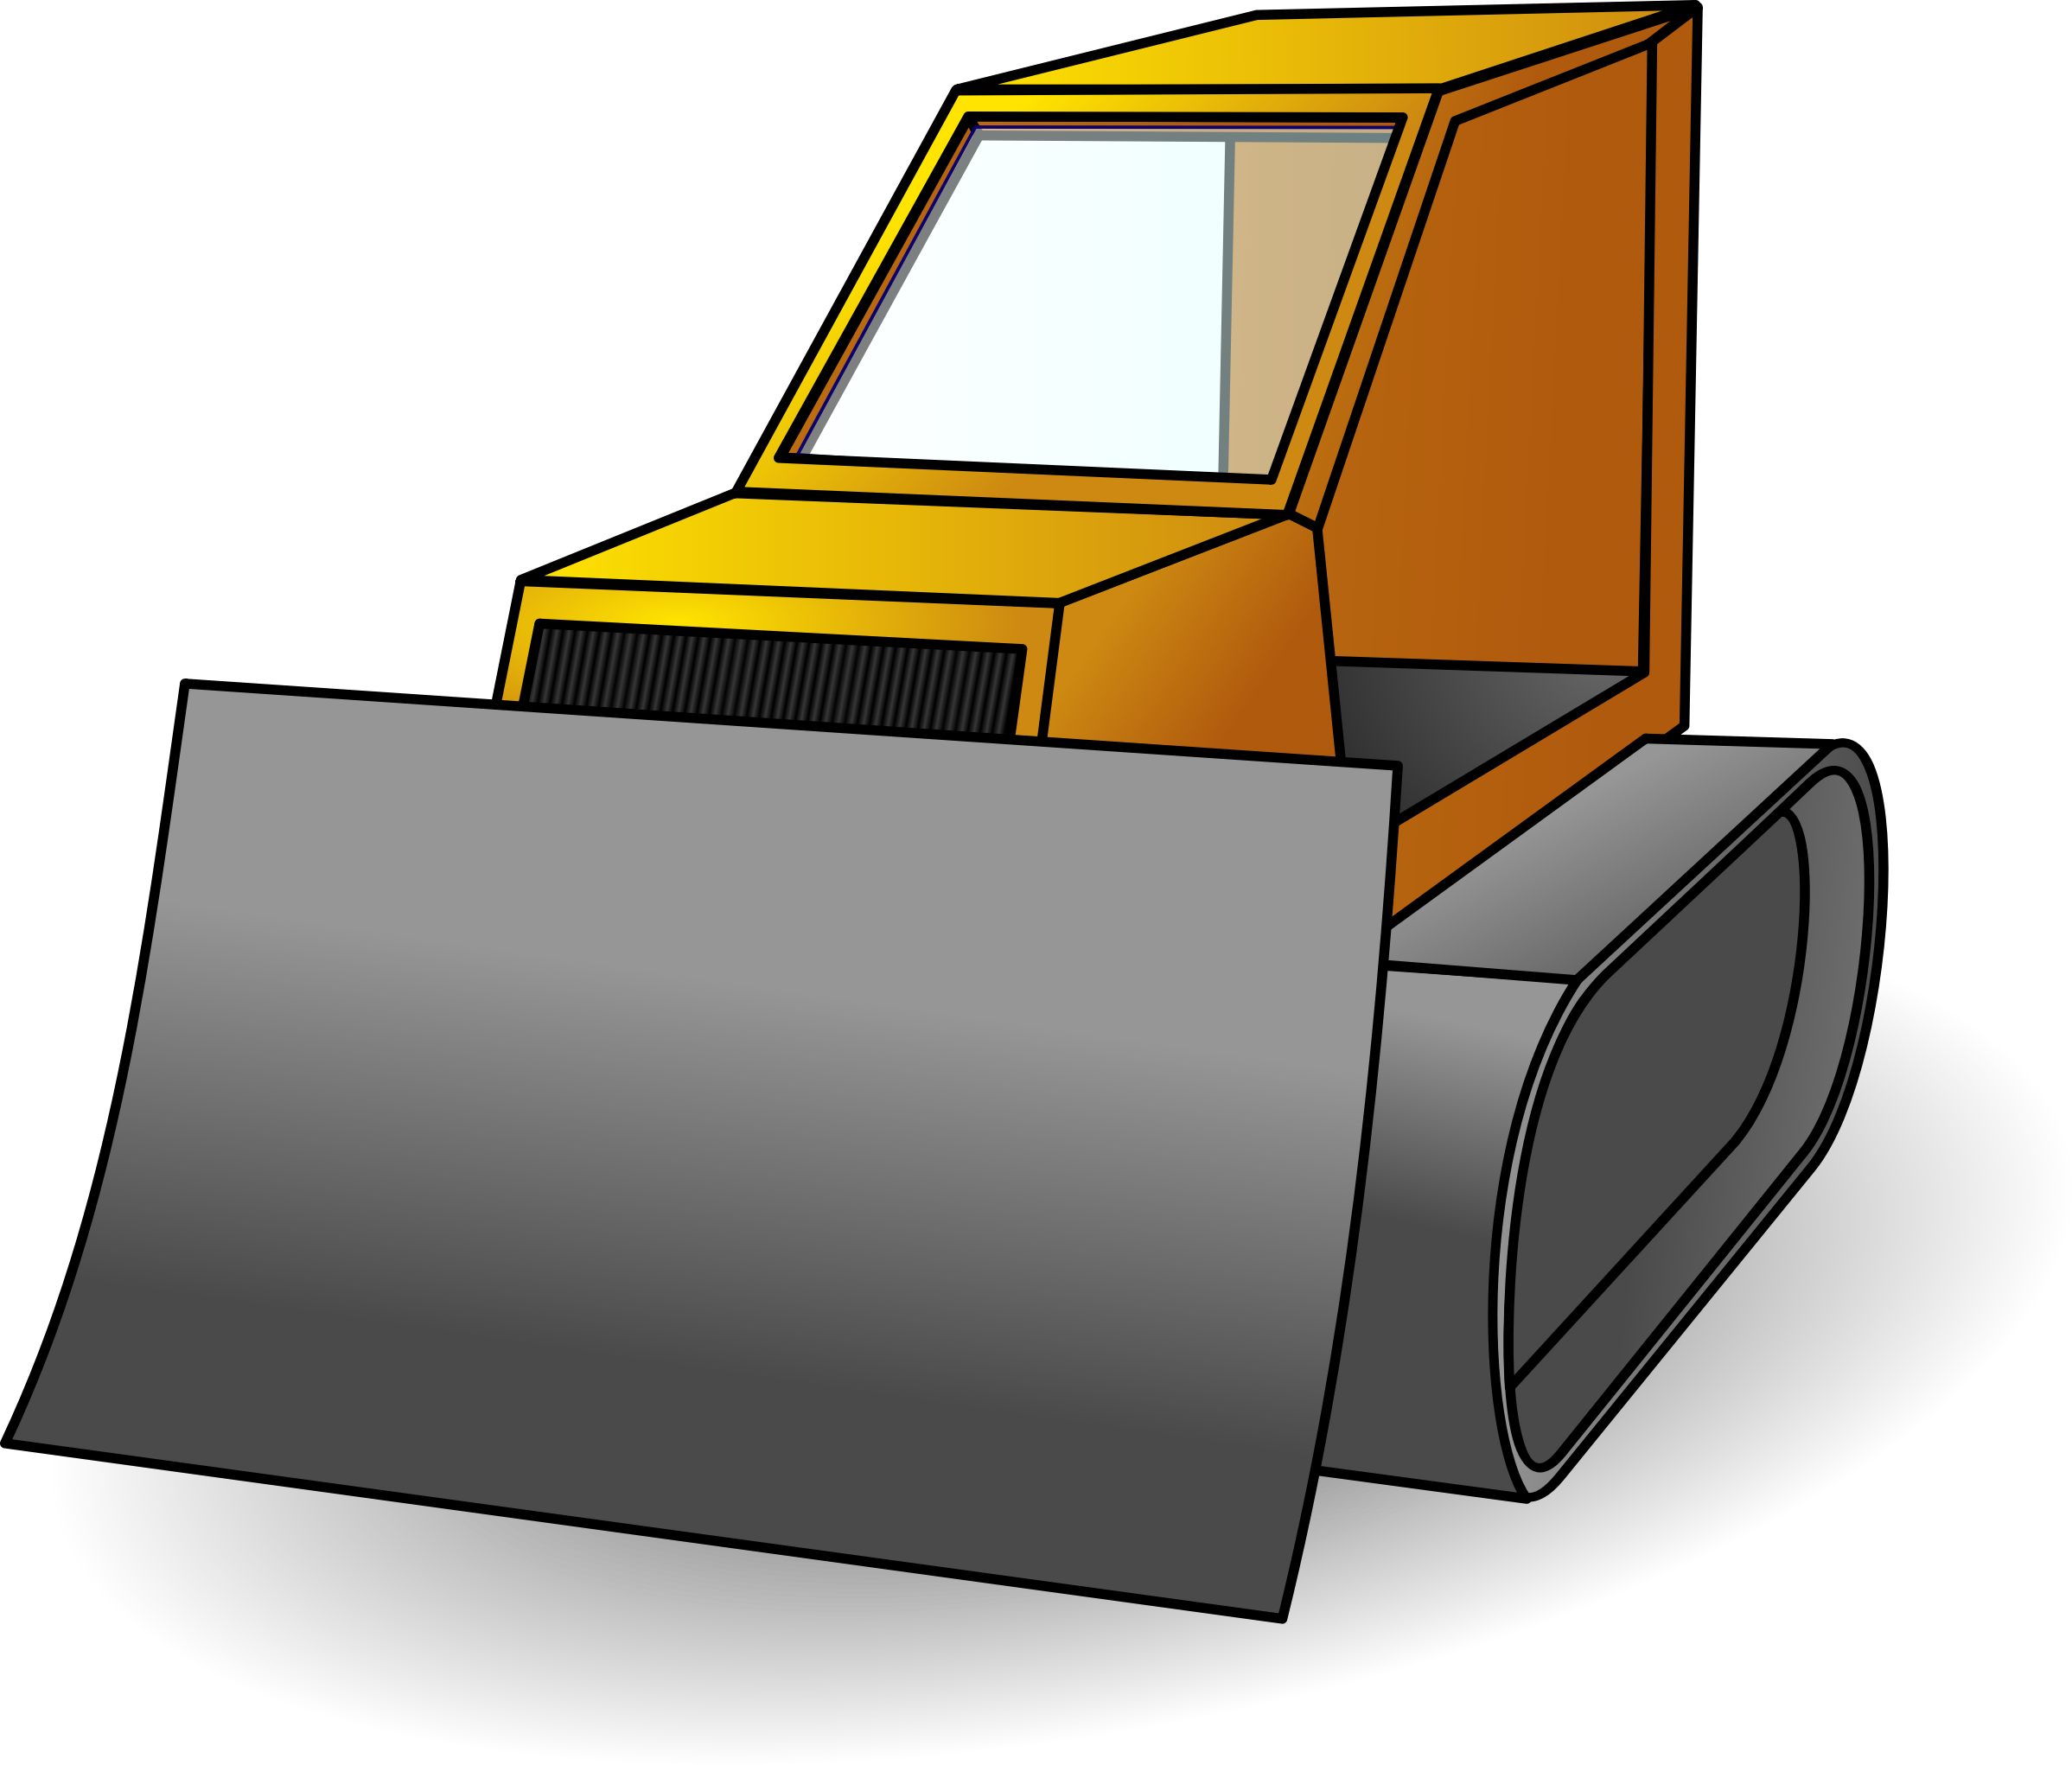 Clipart - bulldozer